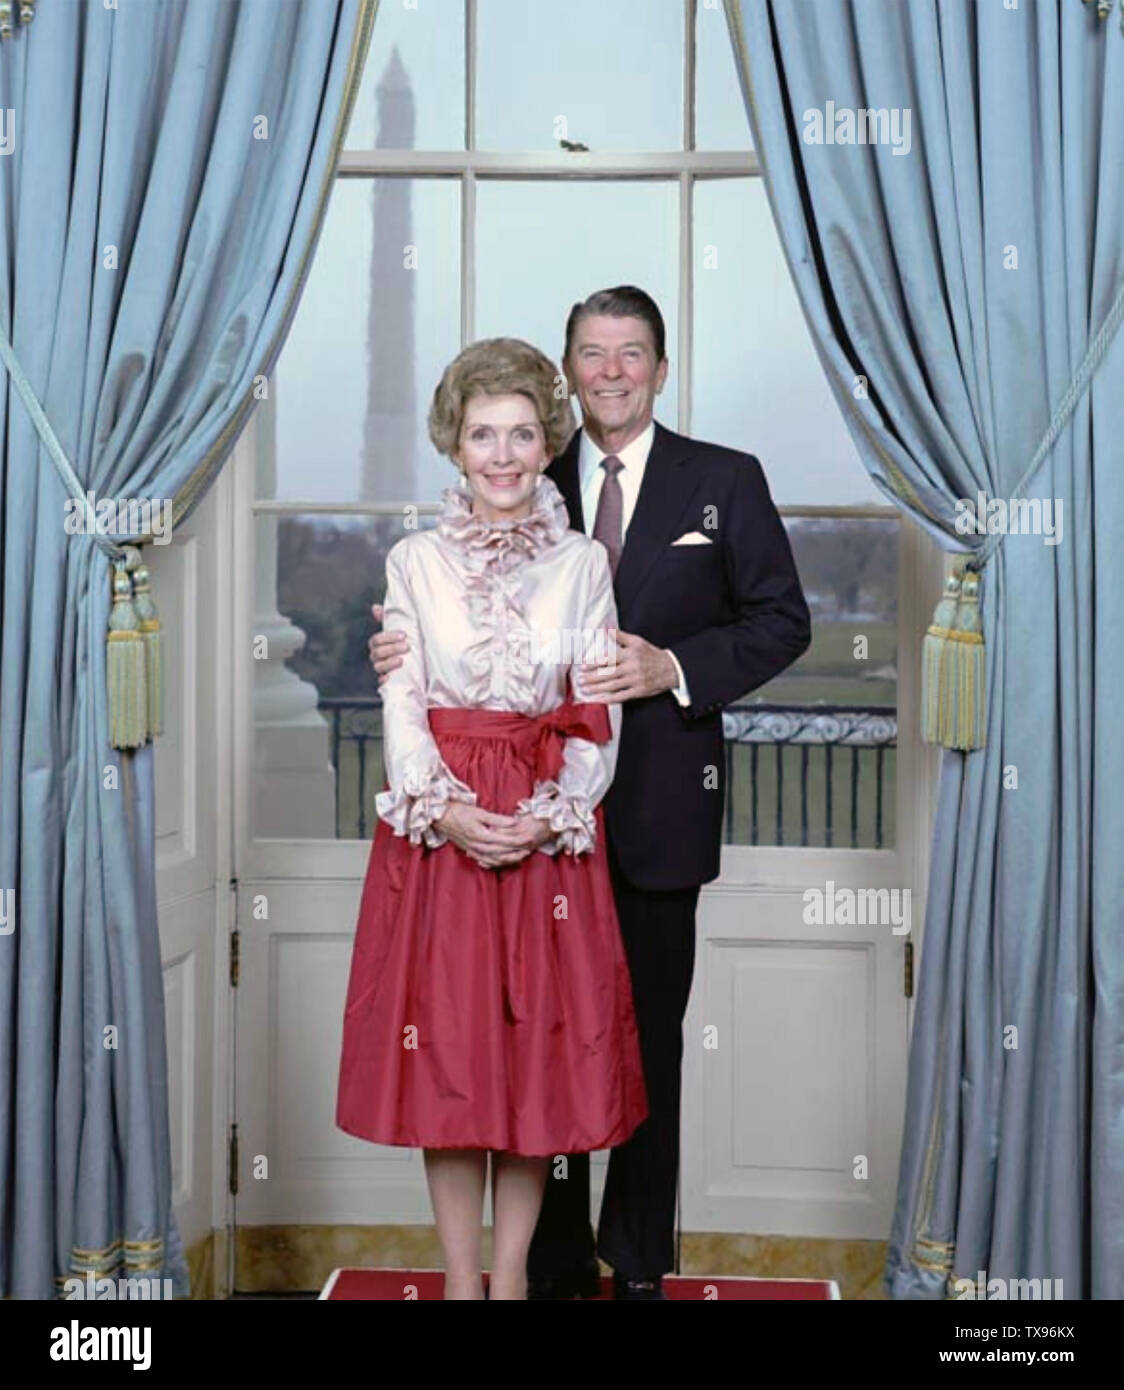 RONALD REAGAN als US-Präsident mit seiner Frau Nancy im Weißen Haus etwa 1986. Foto: das Weiße Haus Stockfoto